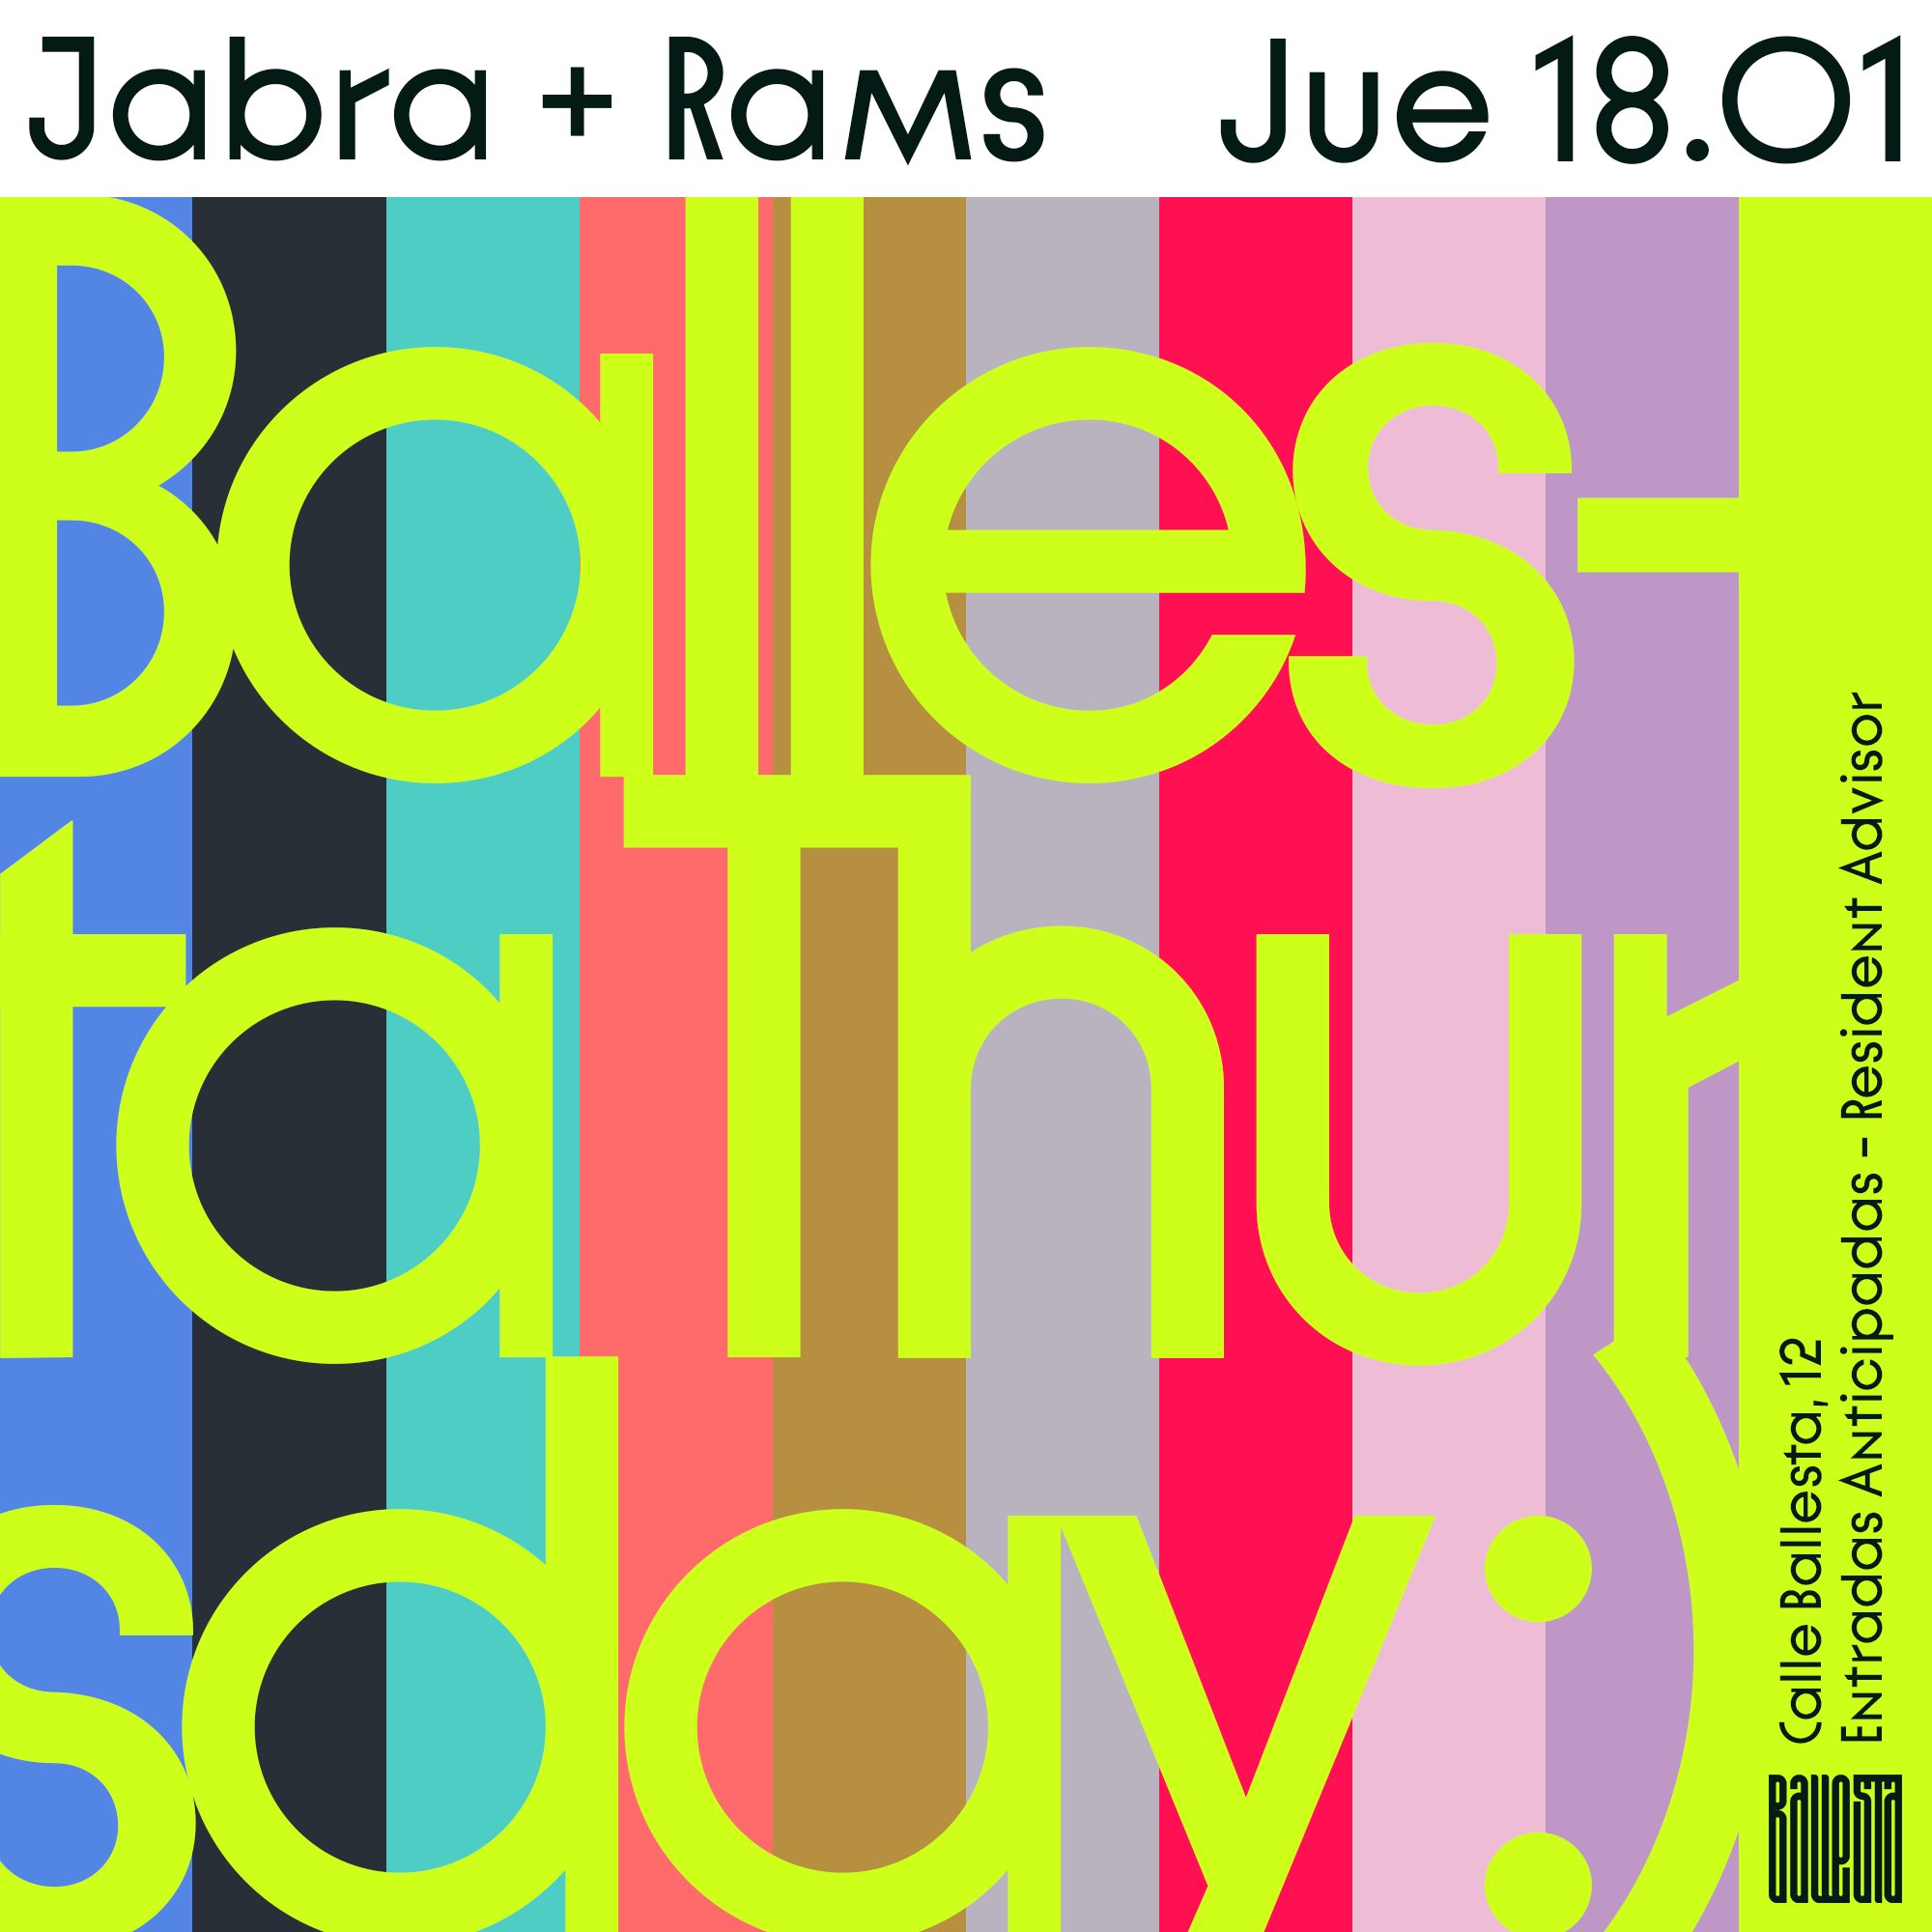 Ballesta Thursday Jabra Rams At Ballesta Club Madrid · Tickets